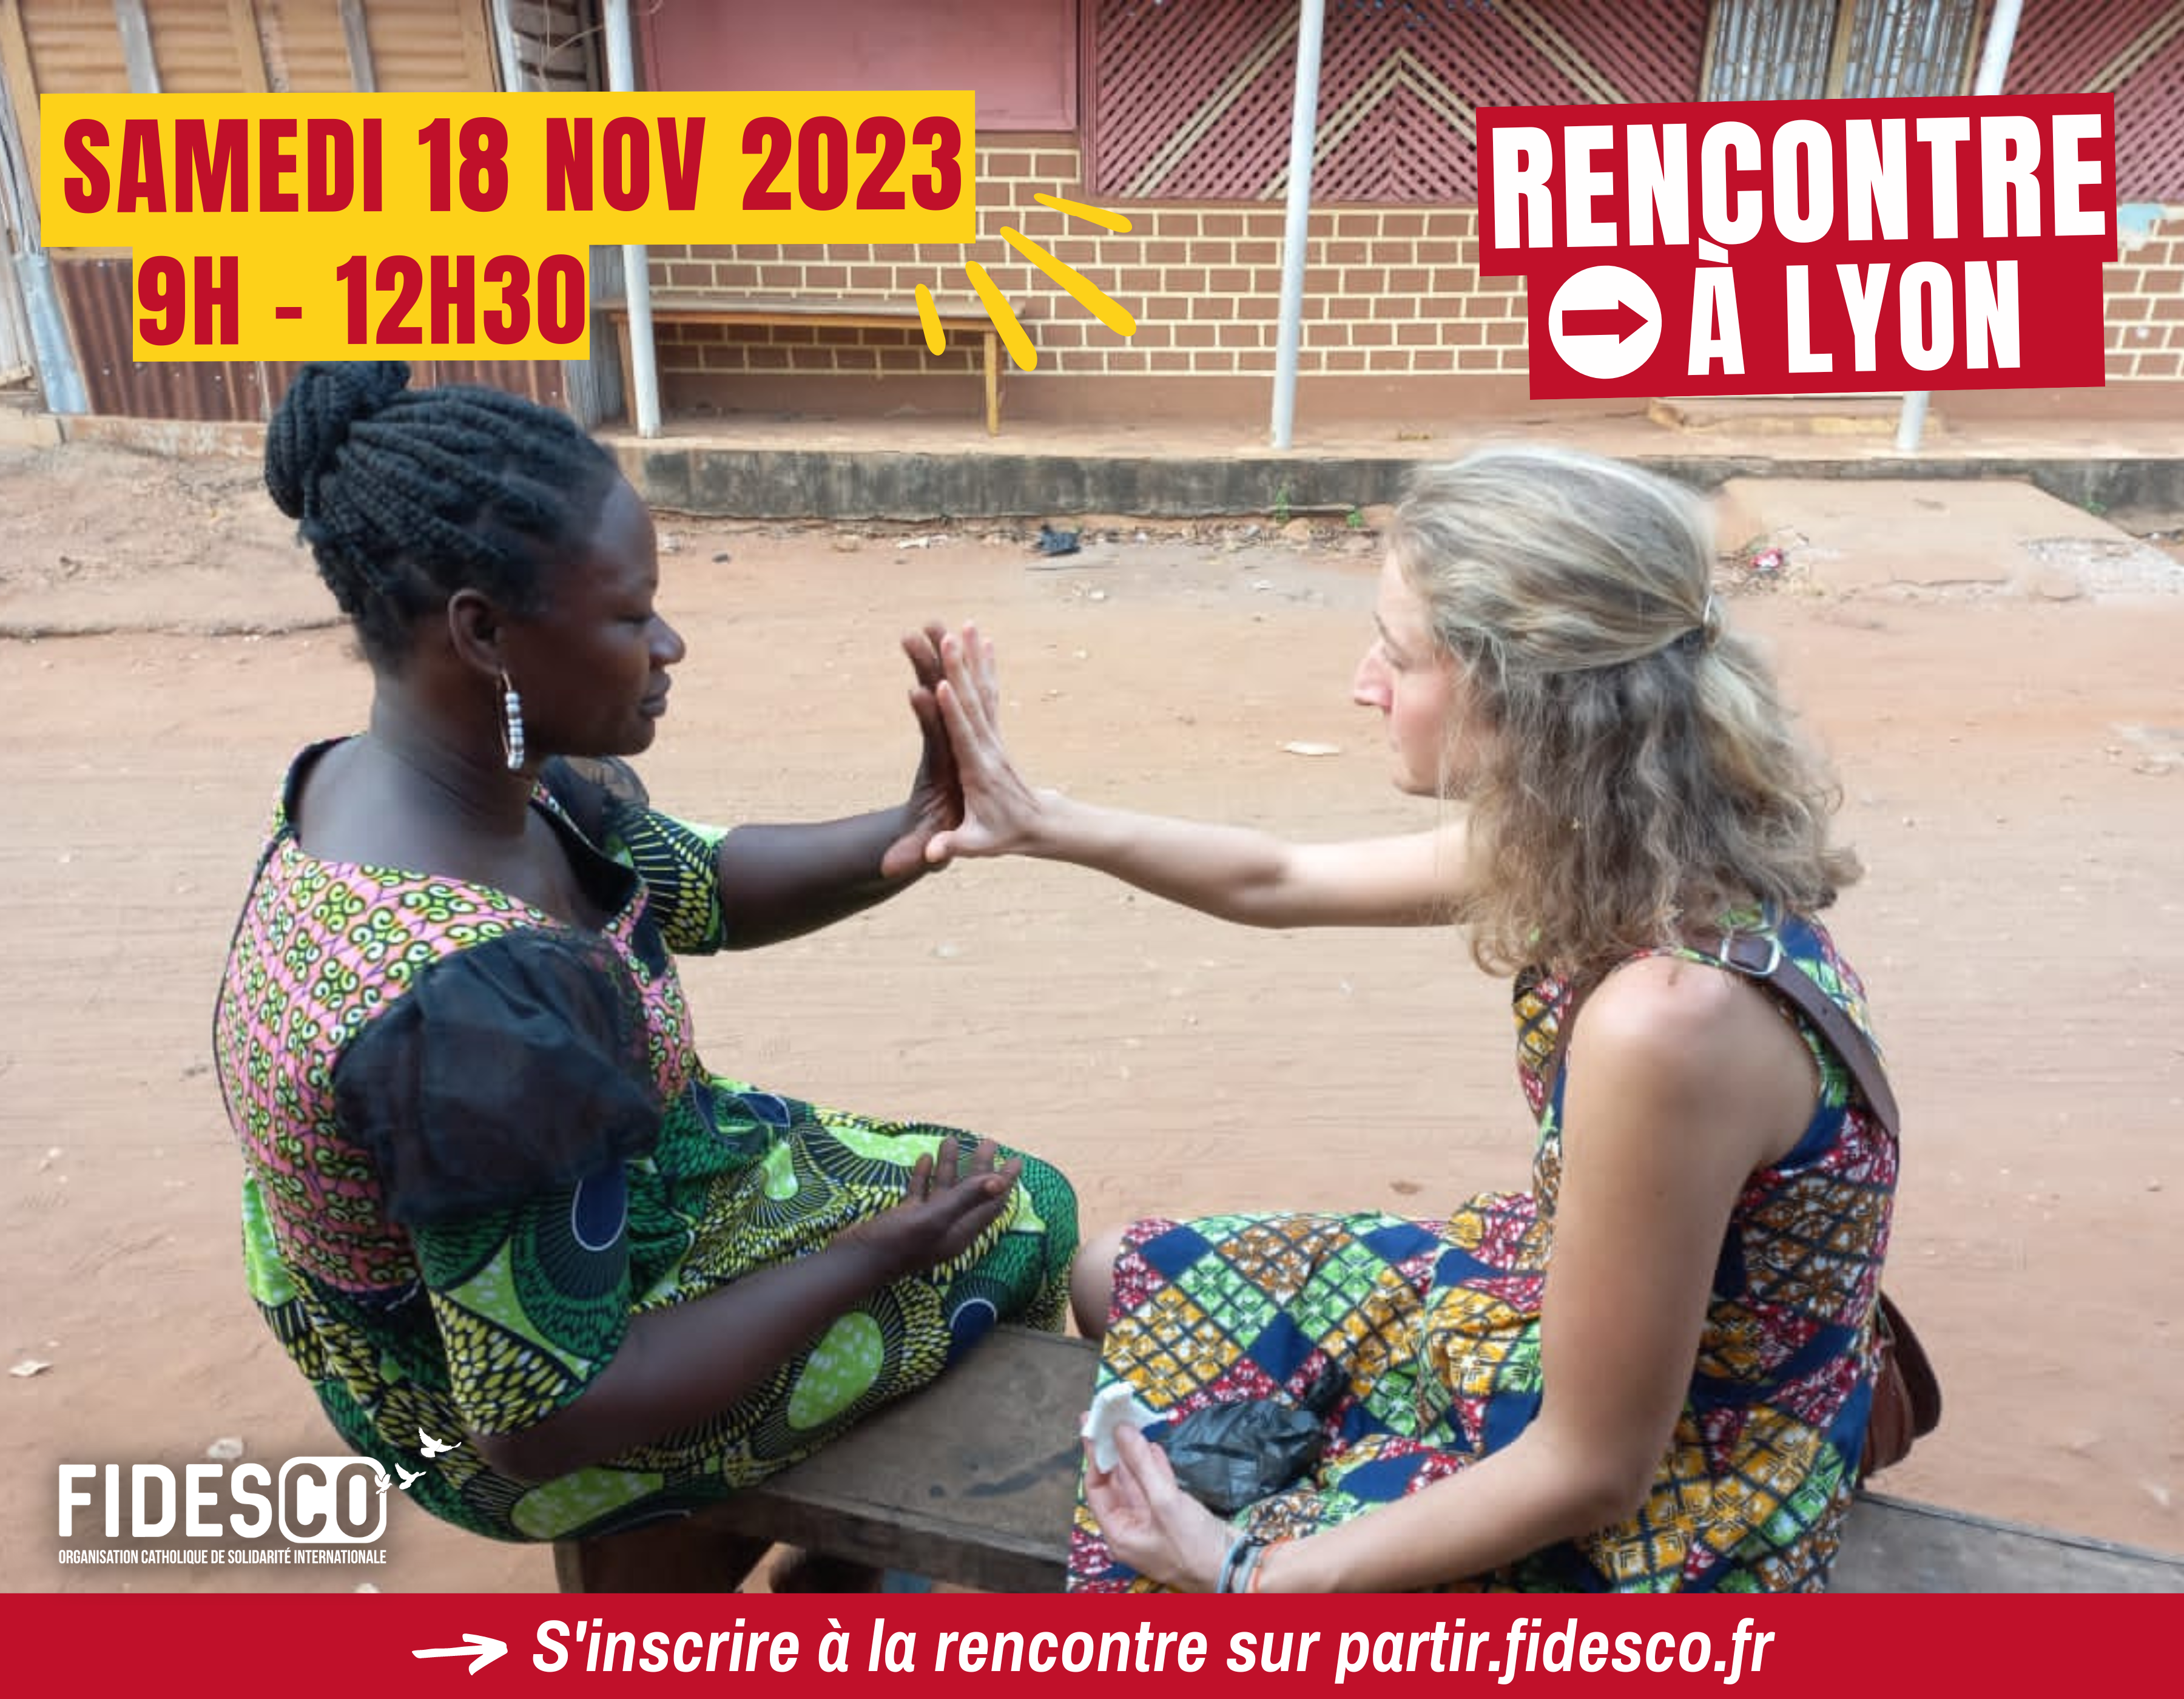 Rencontre Fidesco le 18 novembre à Lyon